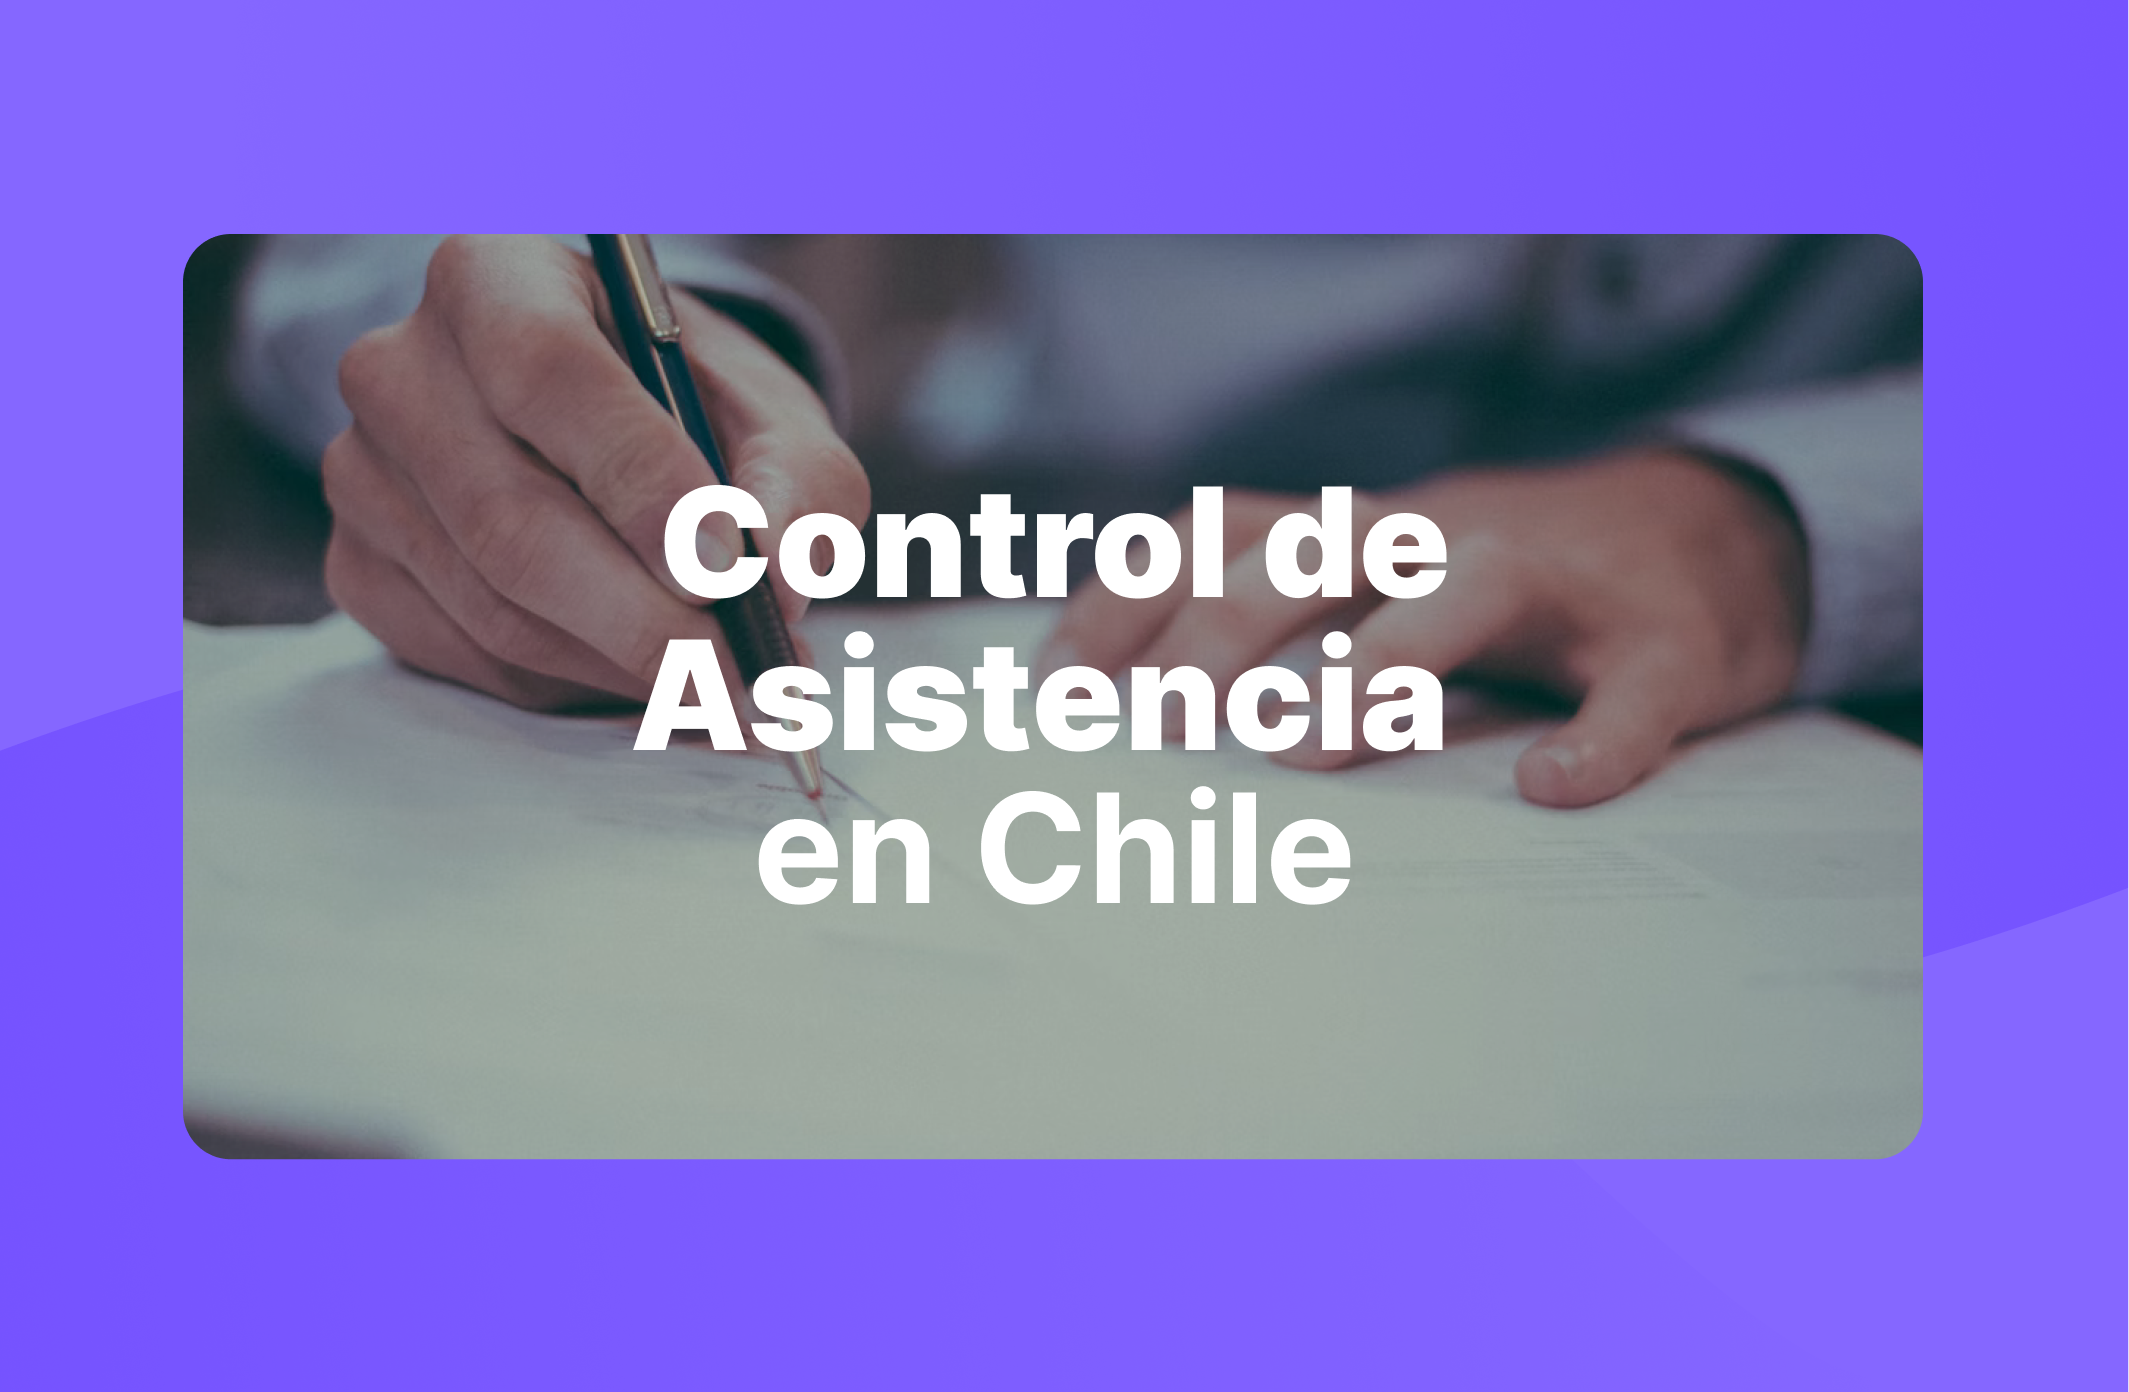 Control de Asistencia: Cómo funciona en Chile